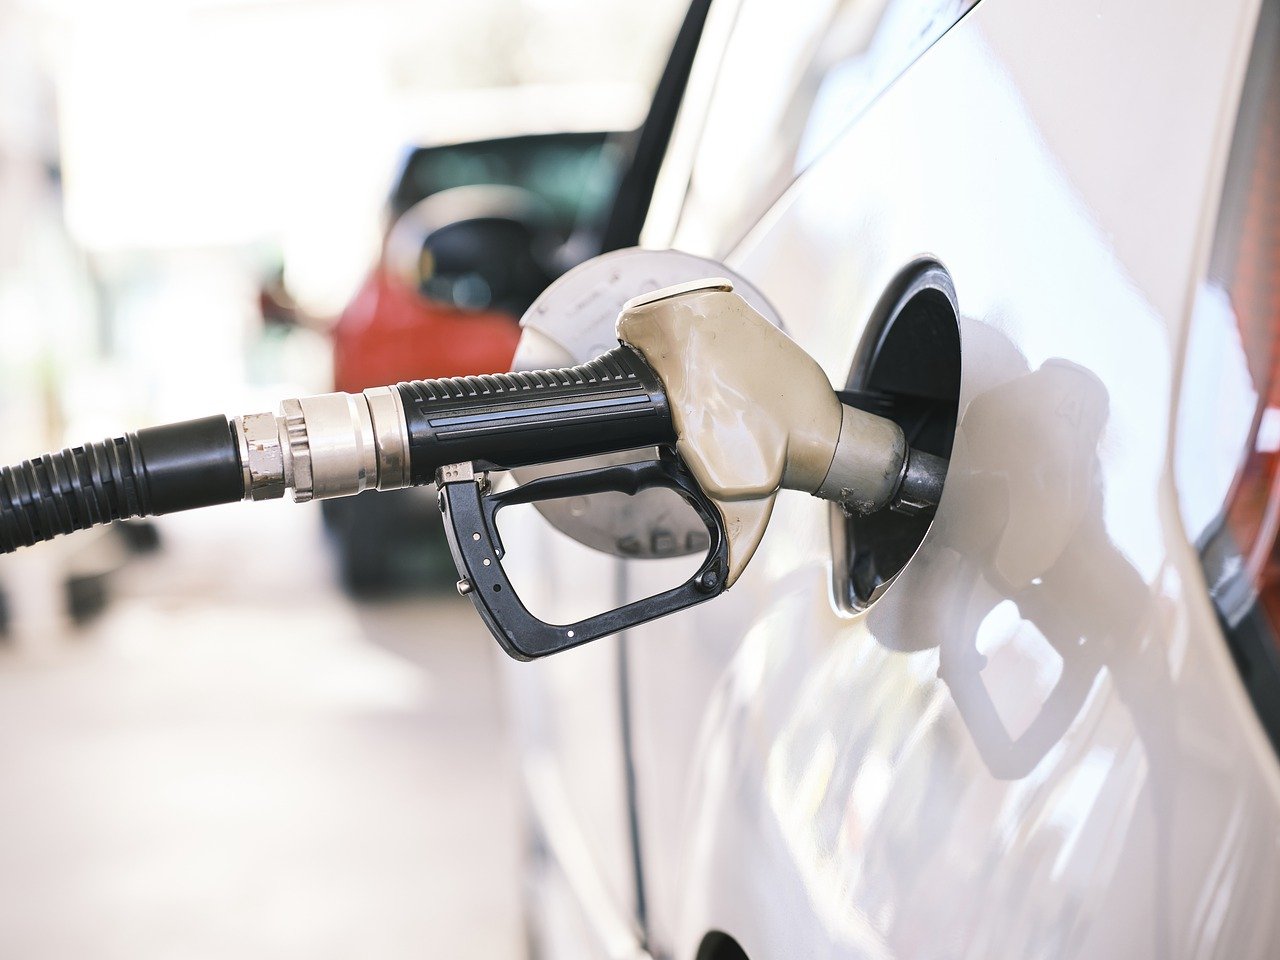 Prezzo dei carburanti ancora in calo: cosa devono aspettarsi gli automobilisti?